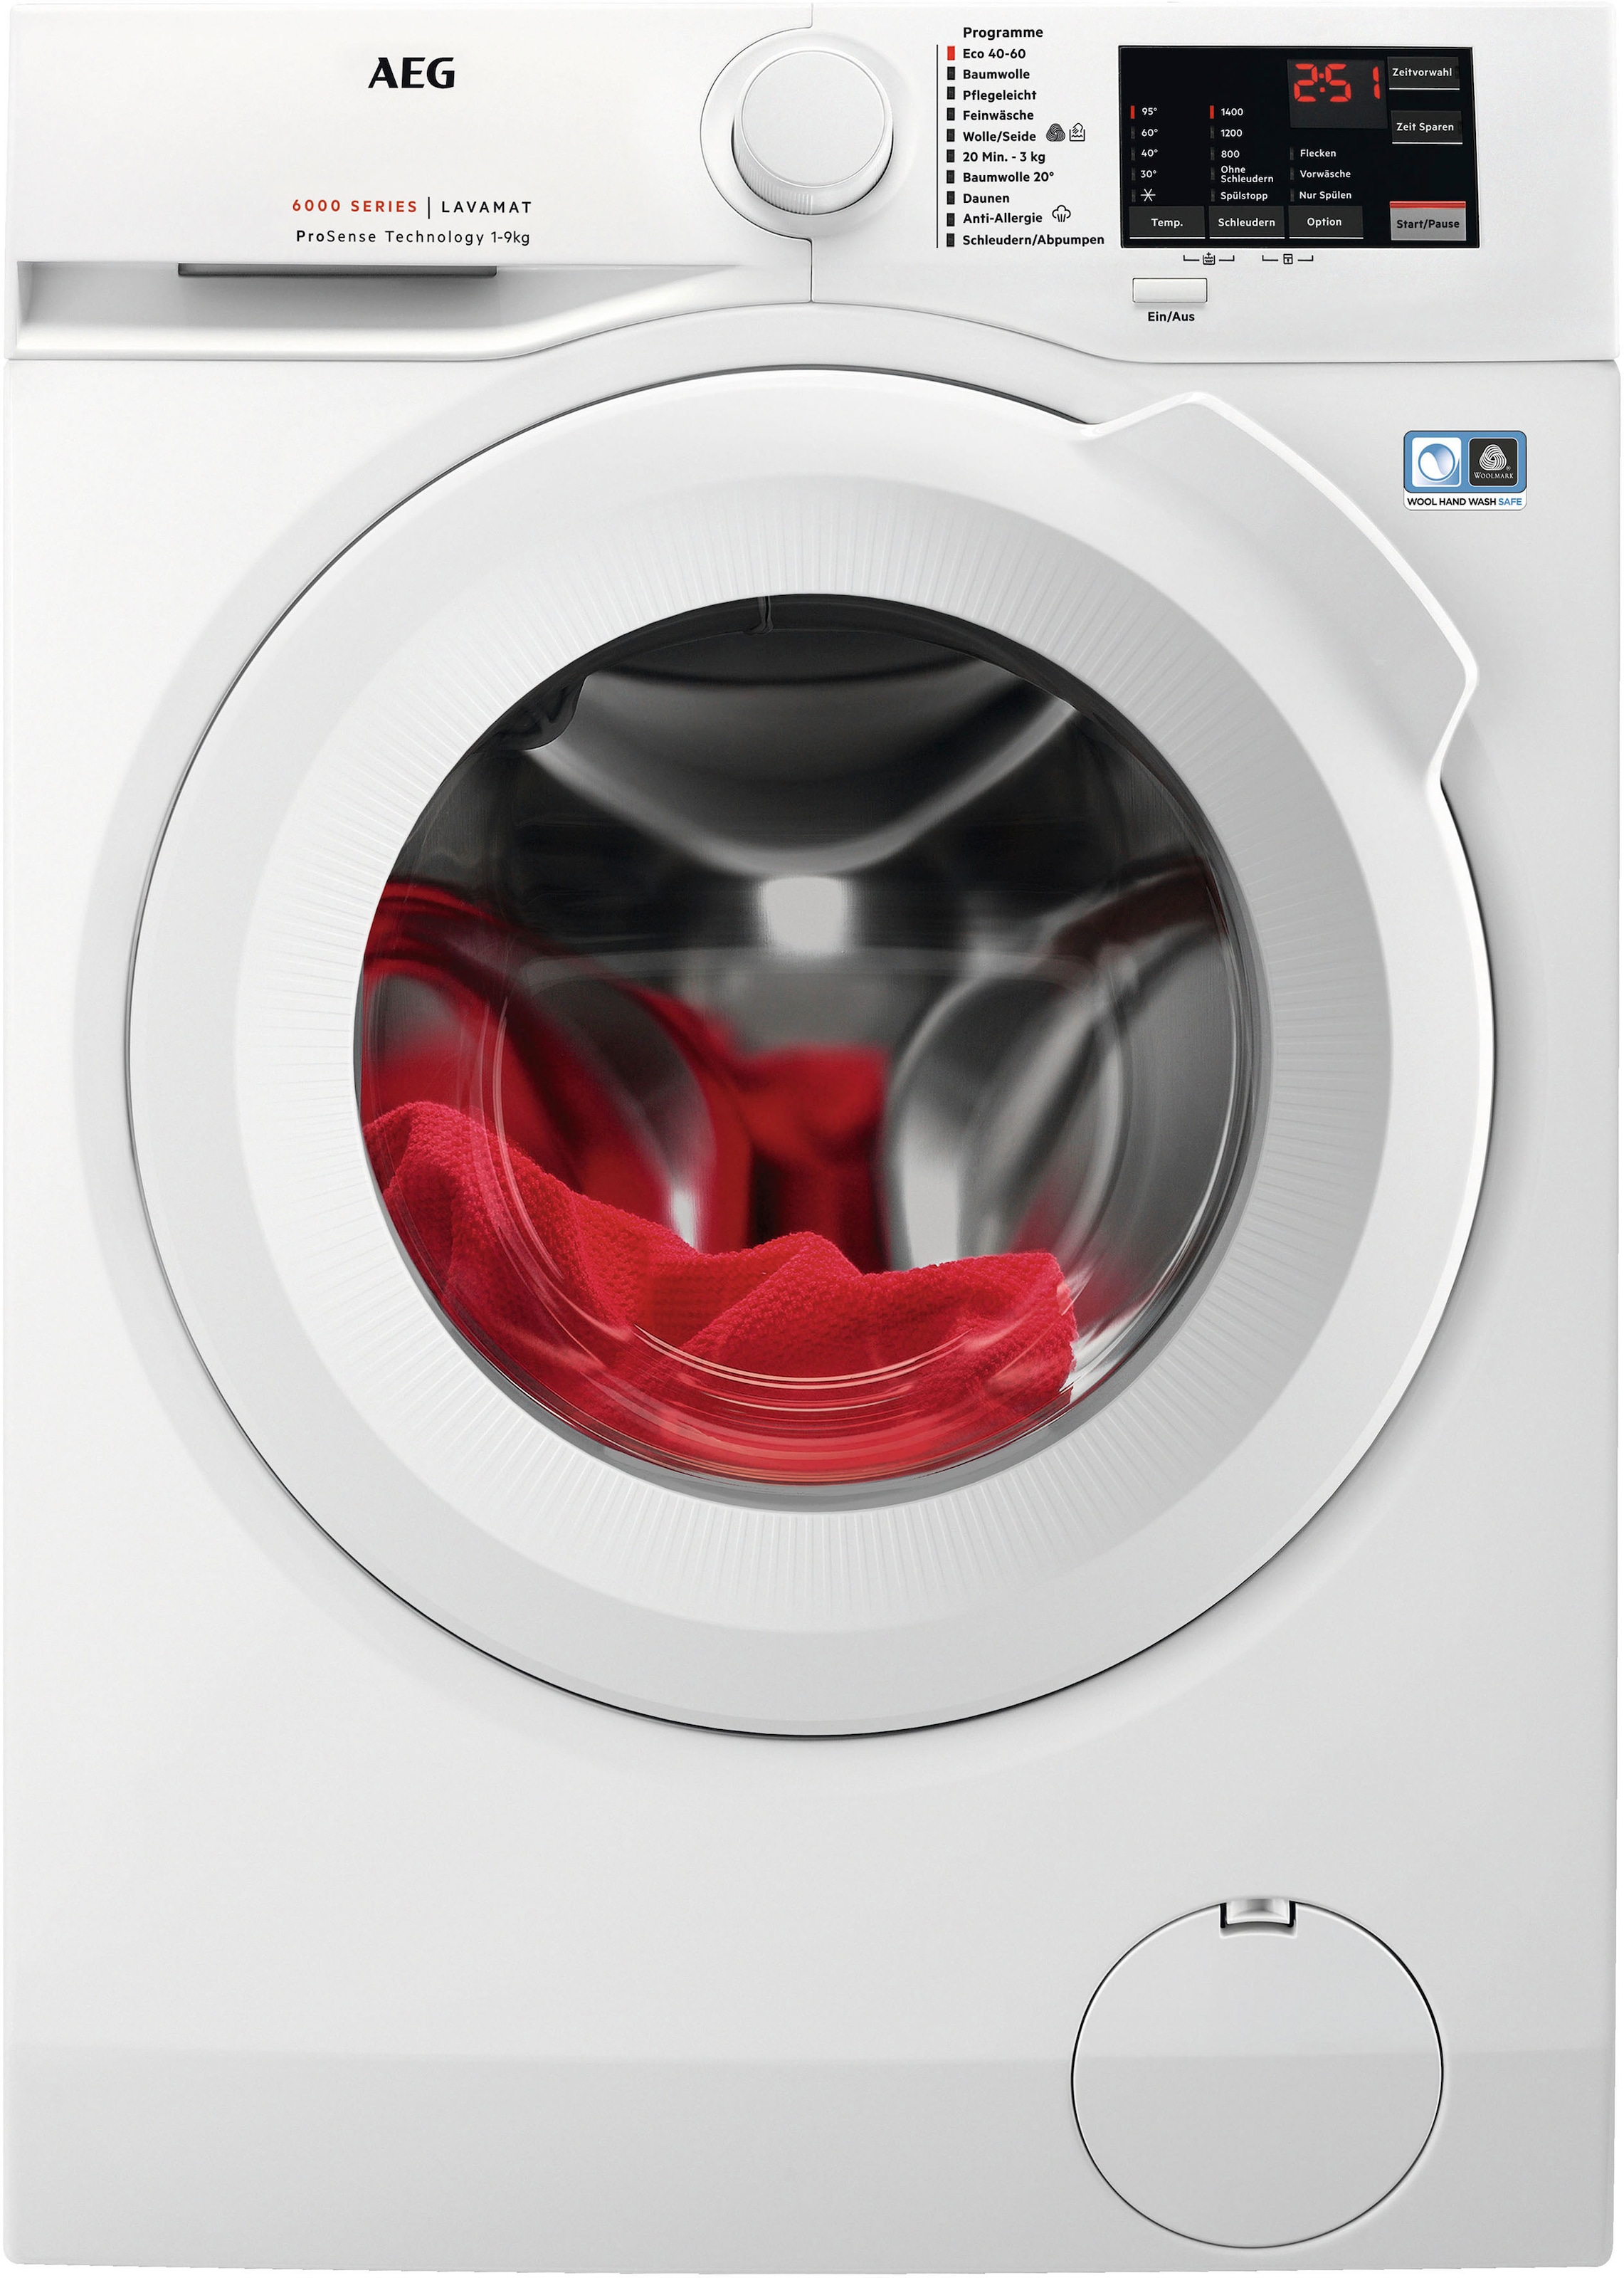 Garantie U/min, Dampf Programm L6FBA50490, XXL kg, Jahren 9 3 Hygiene-/ AEG Waschmaschine, mit Anti-Allergie 1400 mit